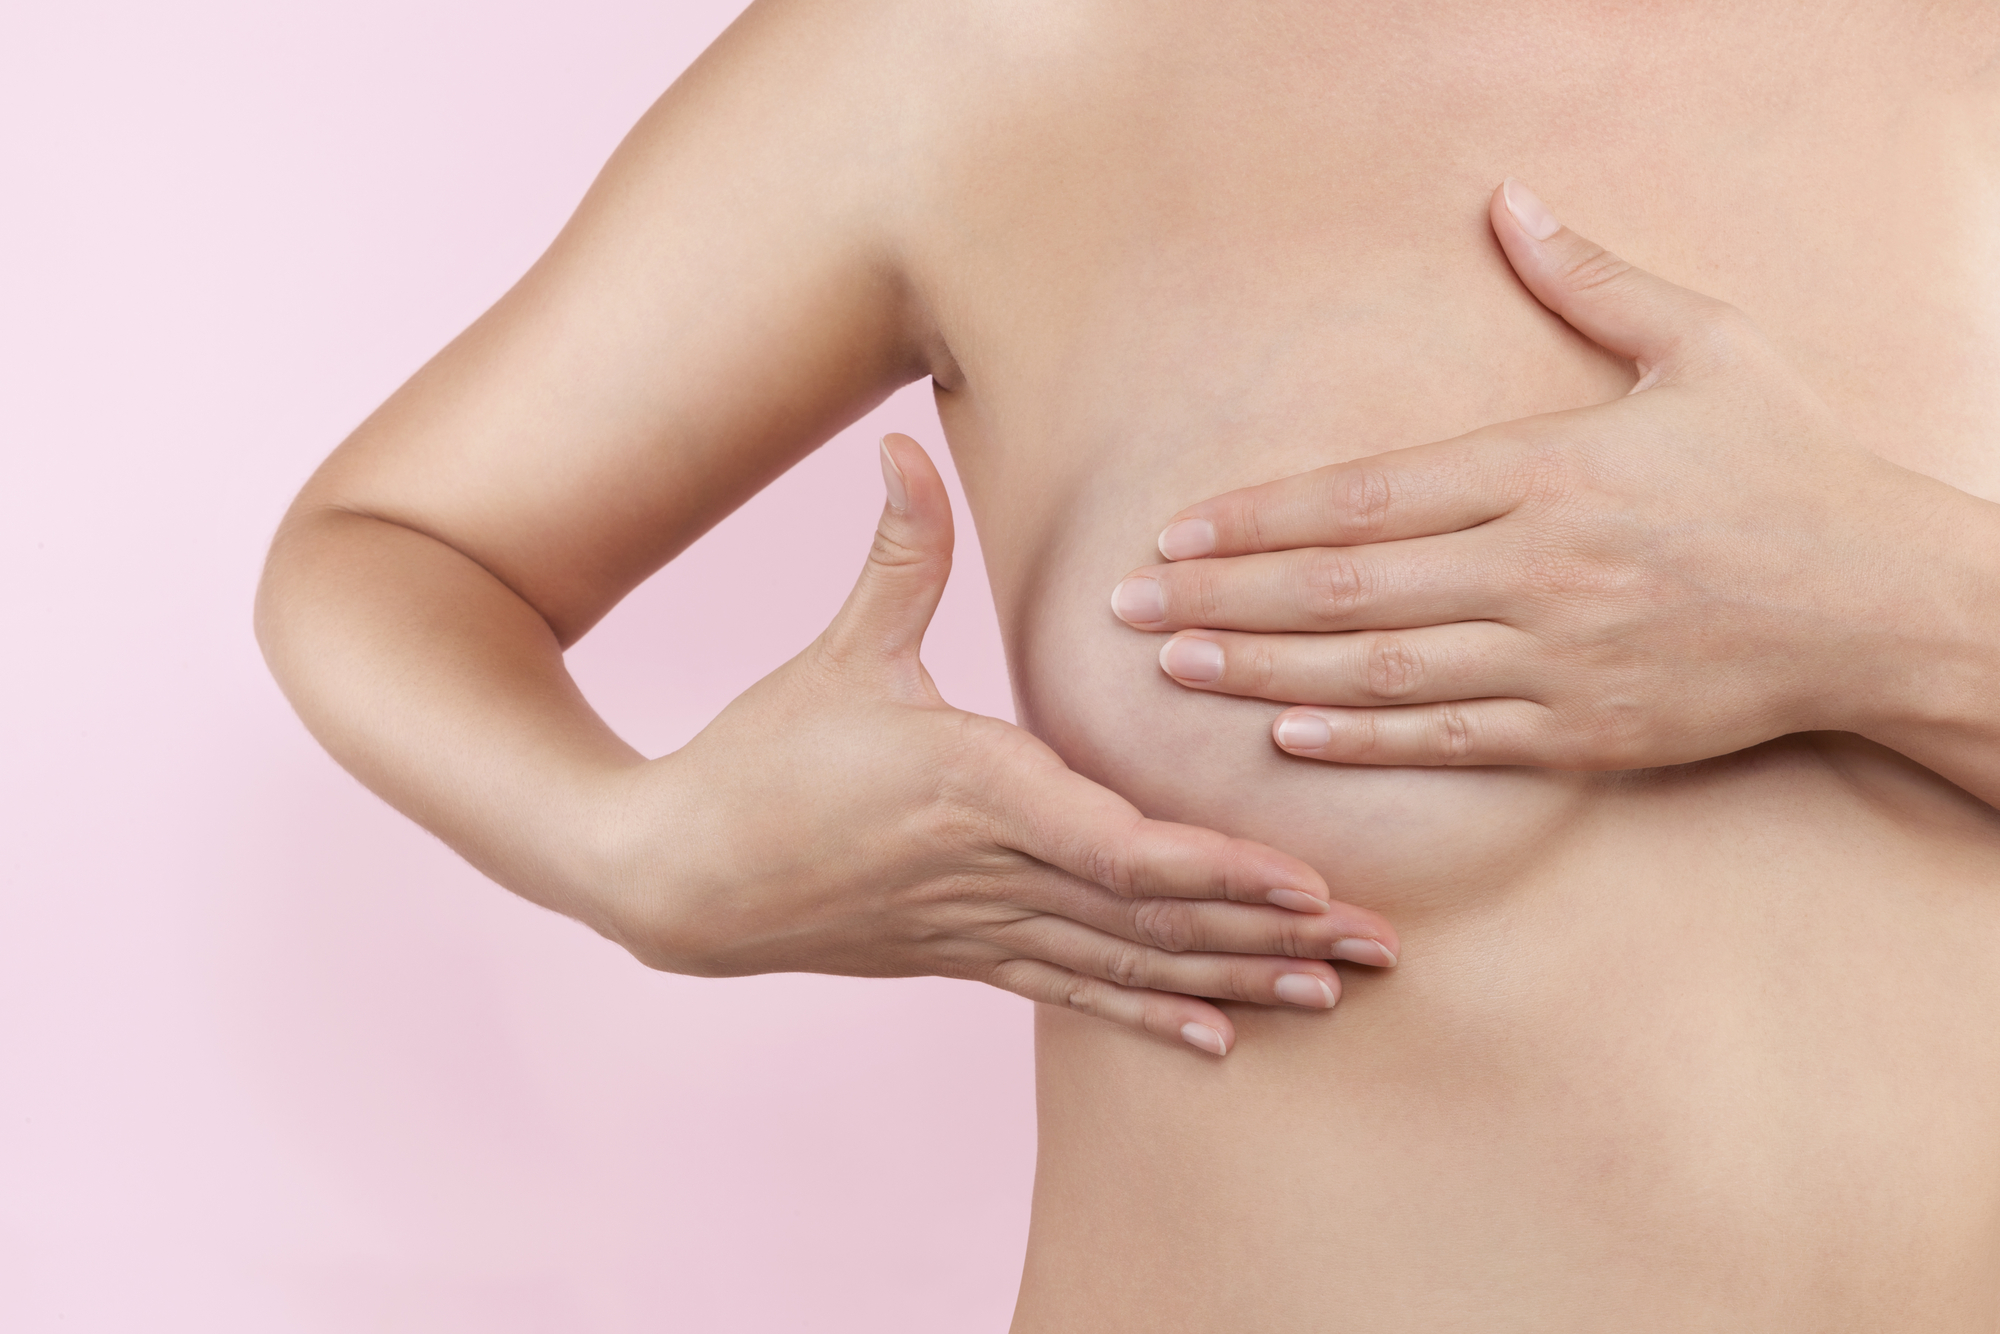 Mamoplastia redutora: cirurgia plástica para diminuir o tamanho e peso das mamas